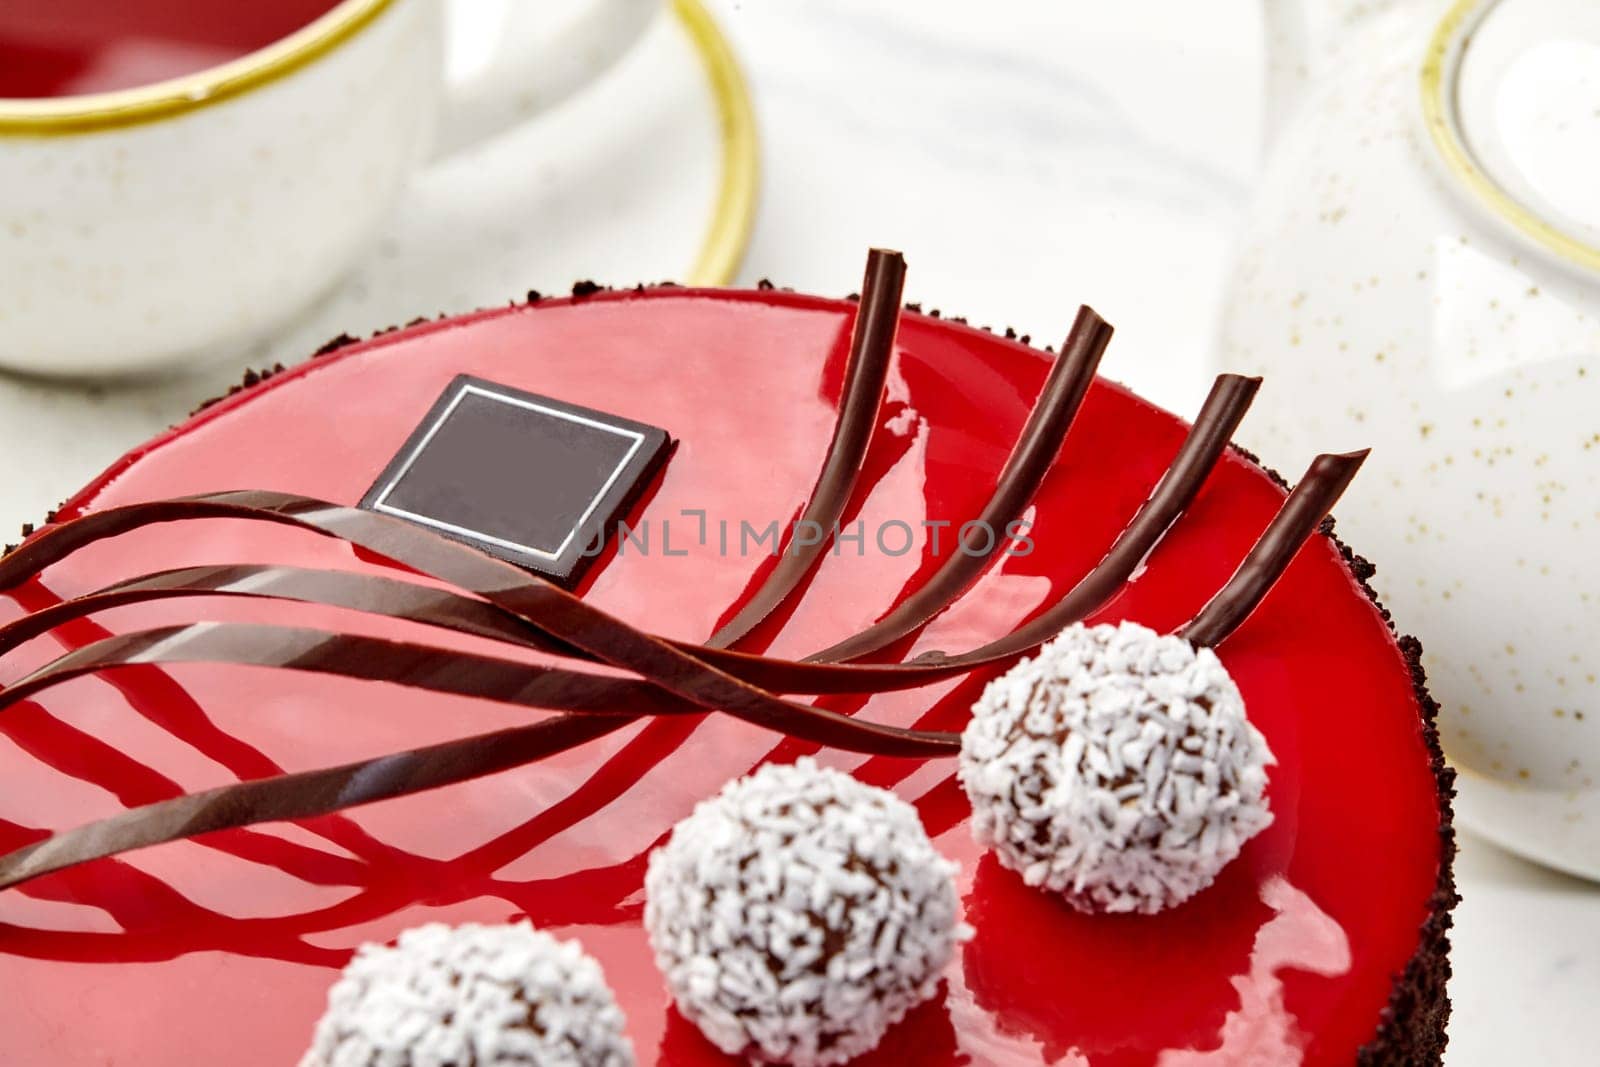 Cake with red glaze, chocolate swirls and coconut truffles with tea by nazarovsergey